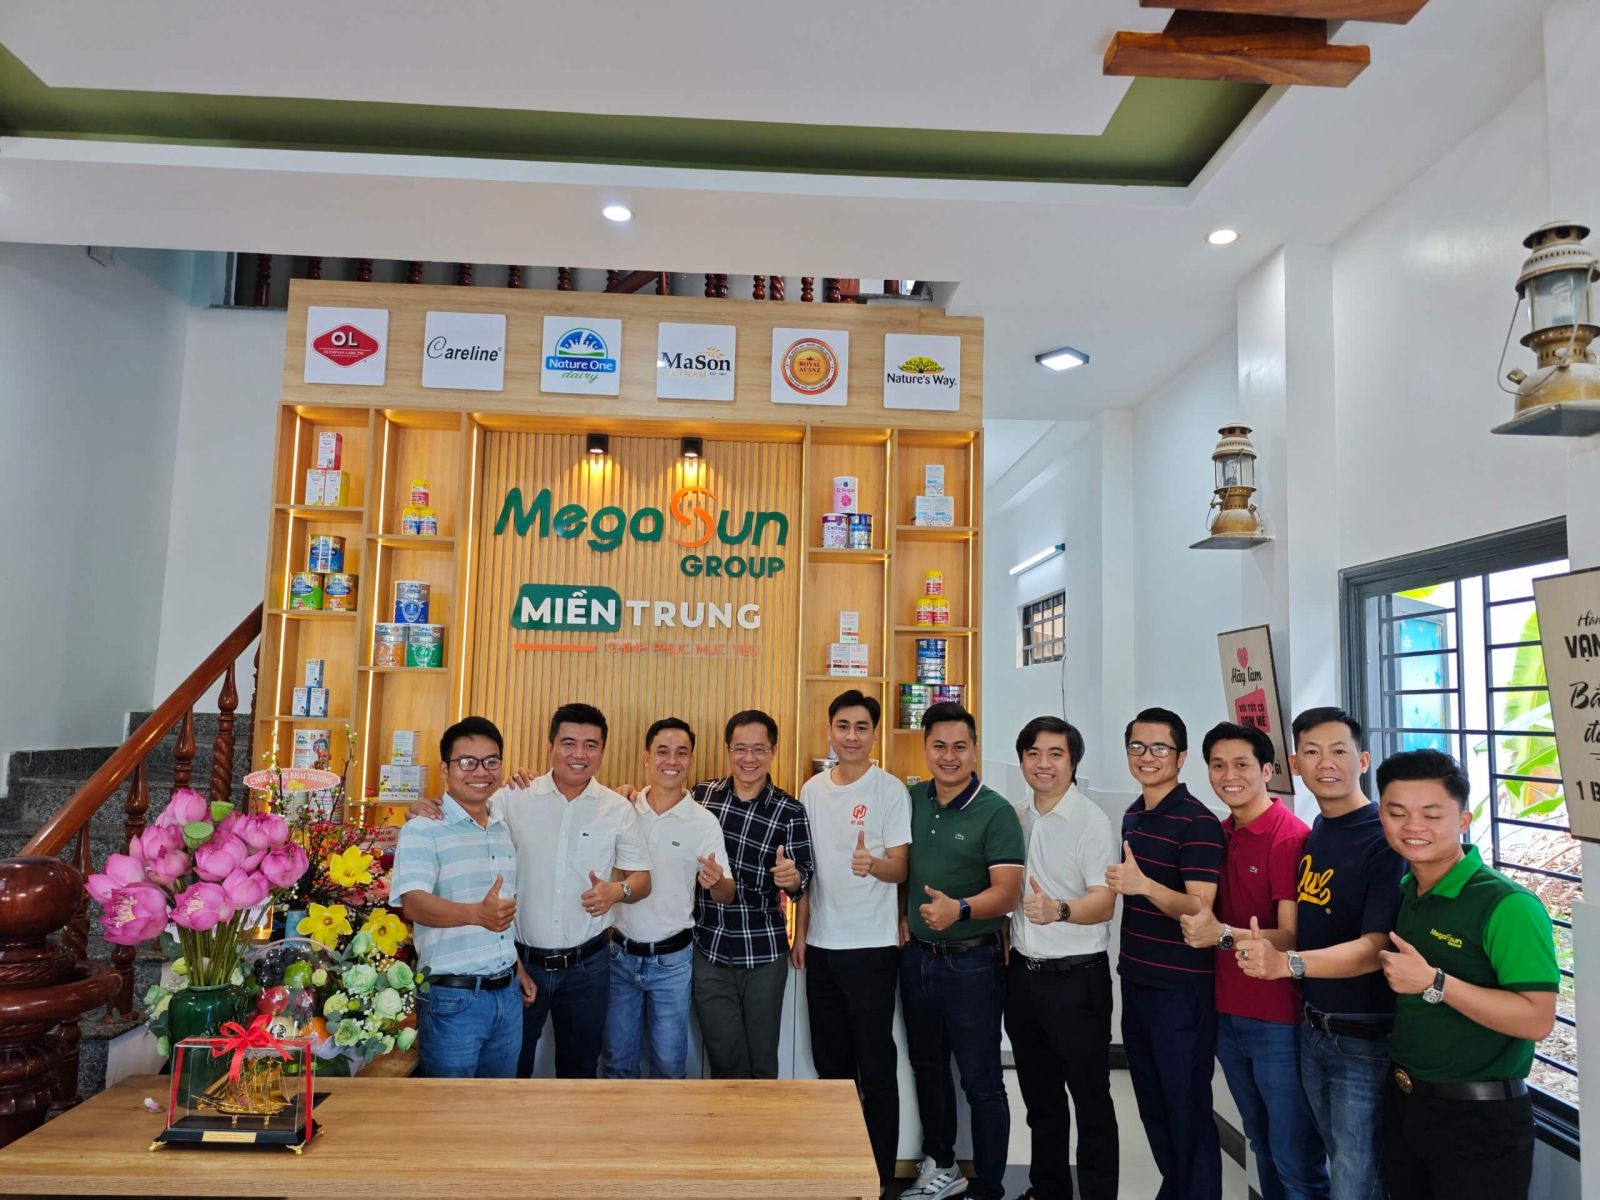 Khai trương văn phòng đại diện miền Trung tại Đà Nẵng